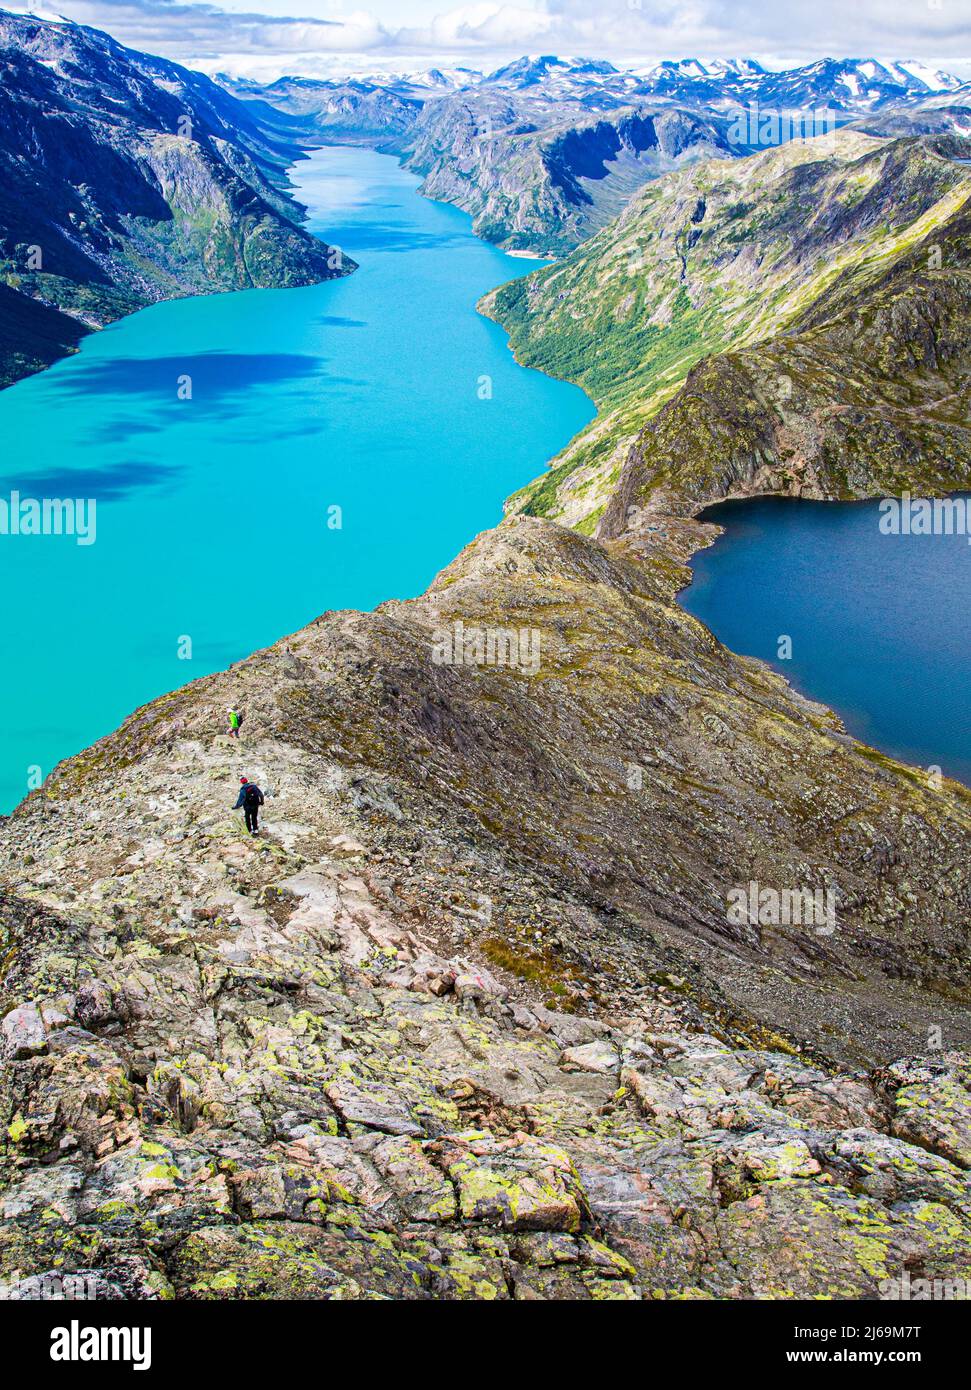 Vue sur les eaux turquoise du lac Gjende et du lac supérieur Bessvatnet sur la promenade de Besseggen Ridge dans le parc national de Jotunheimen Norvège Banque D'Images